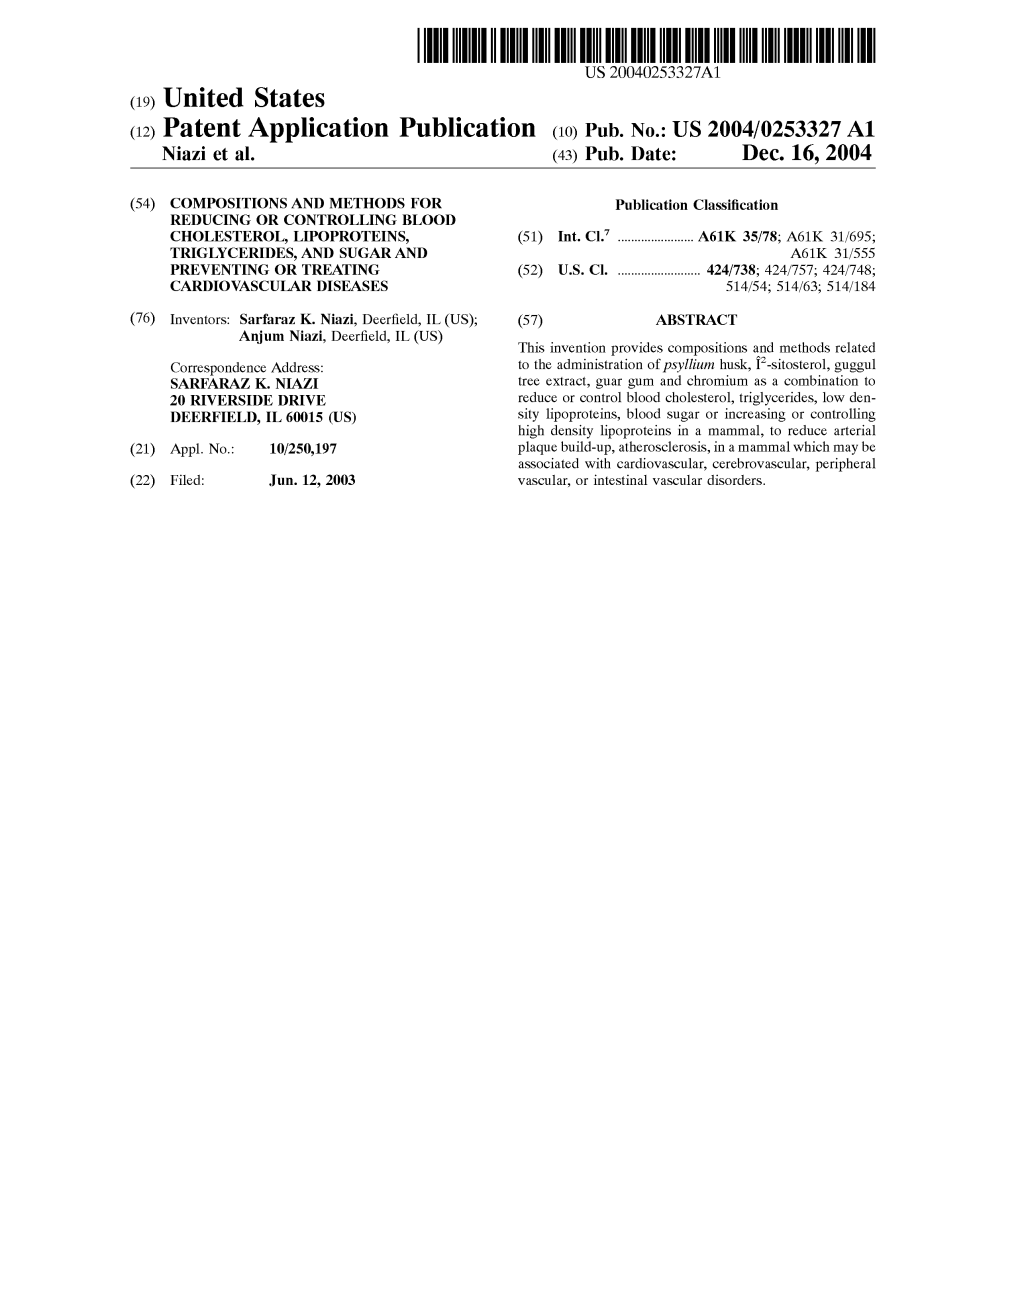 (12) Patent Application Publication (10) Pub. No.: US 2004/0253327 A1 Niazi Et Al